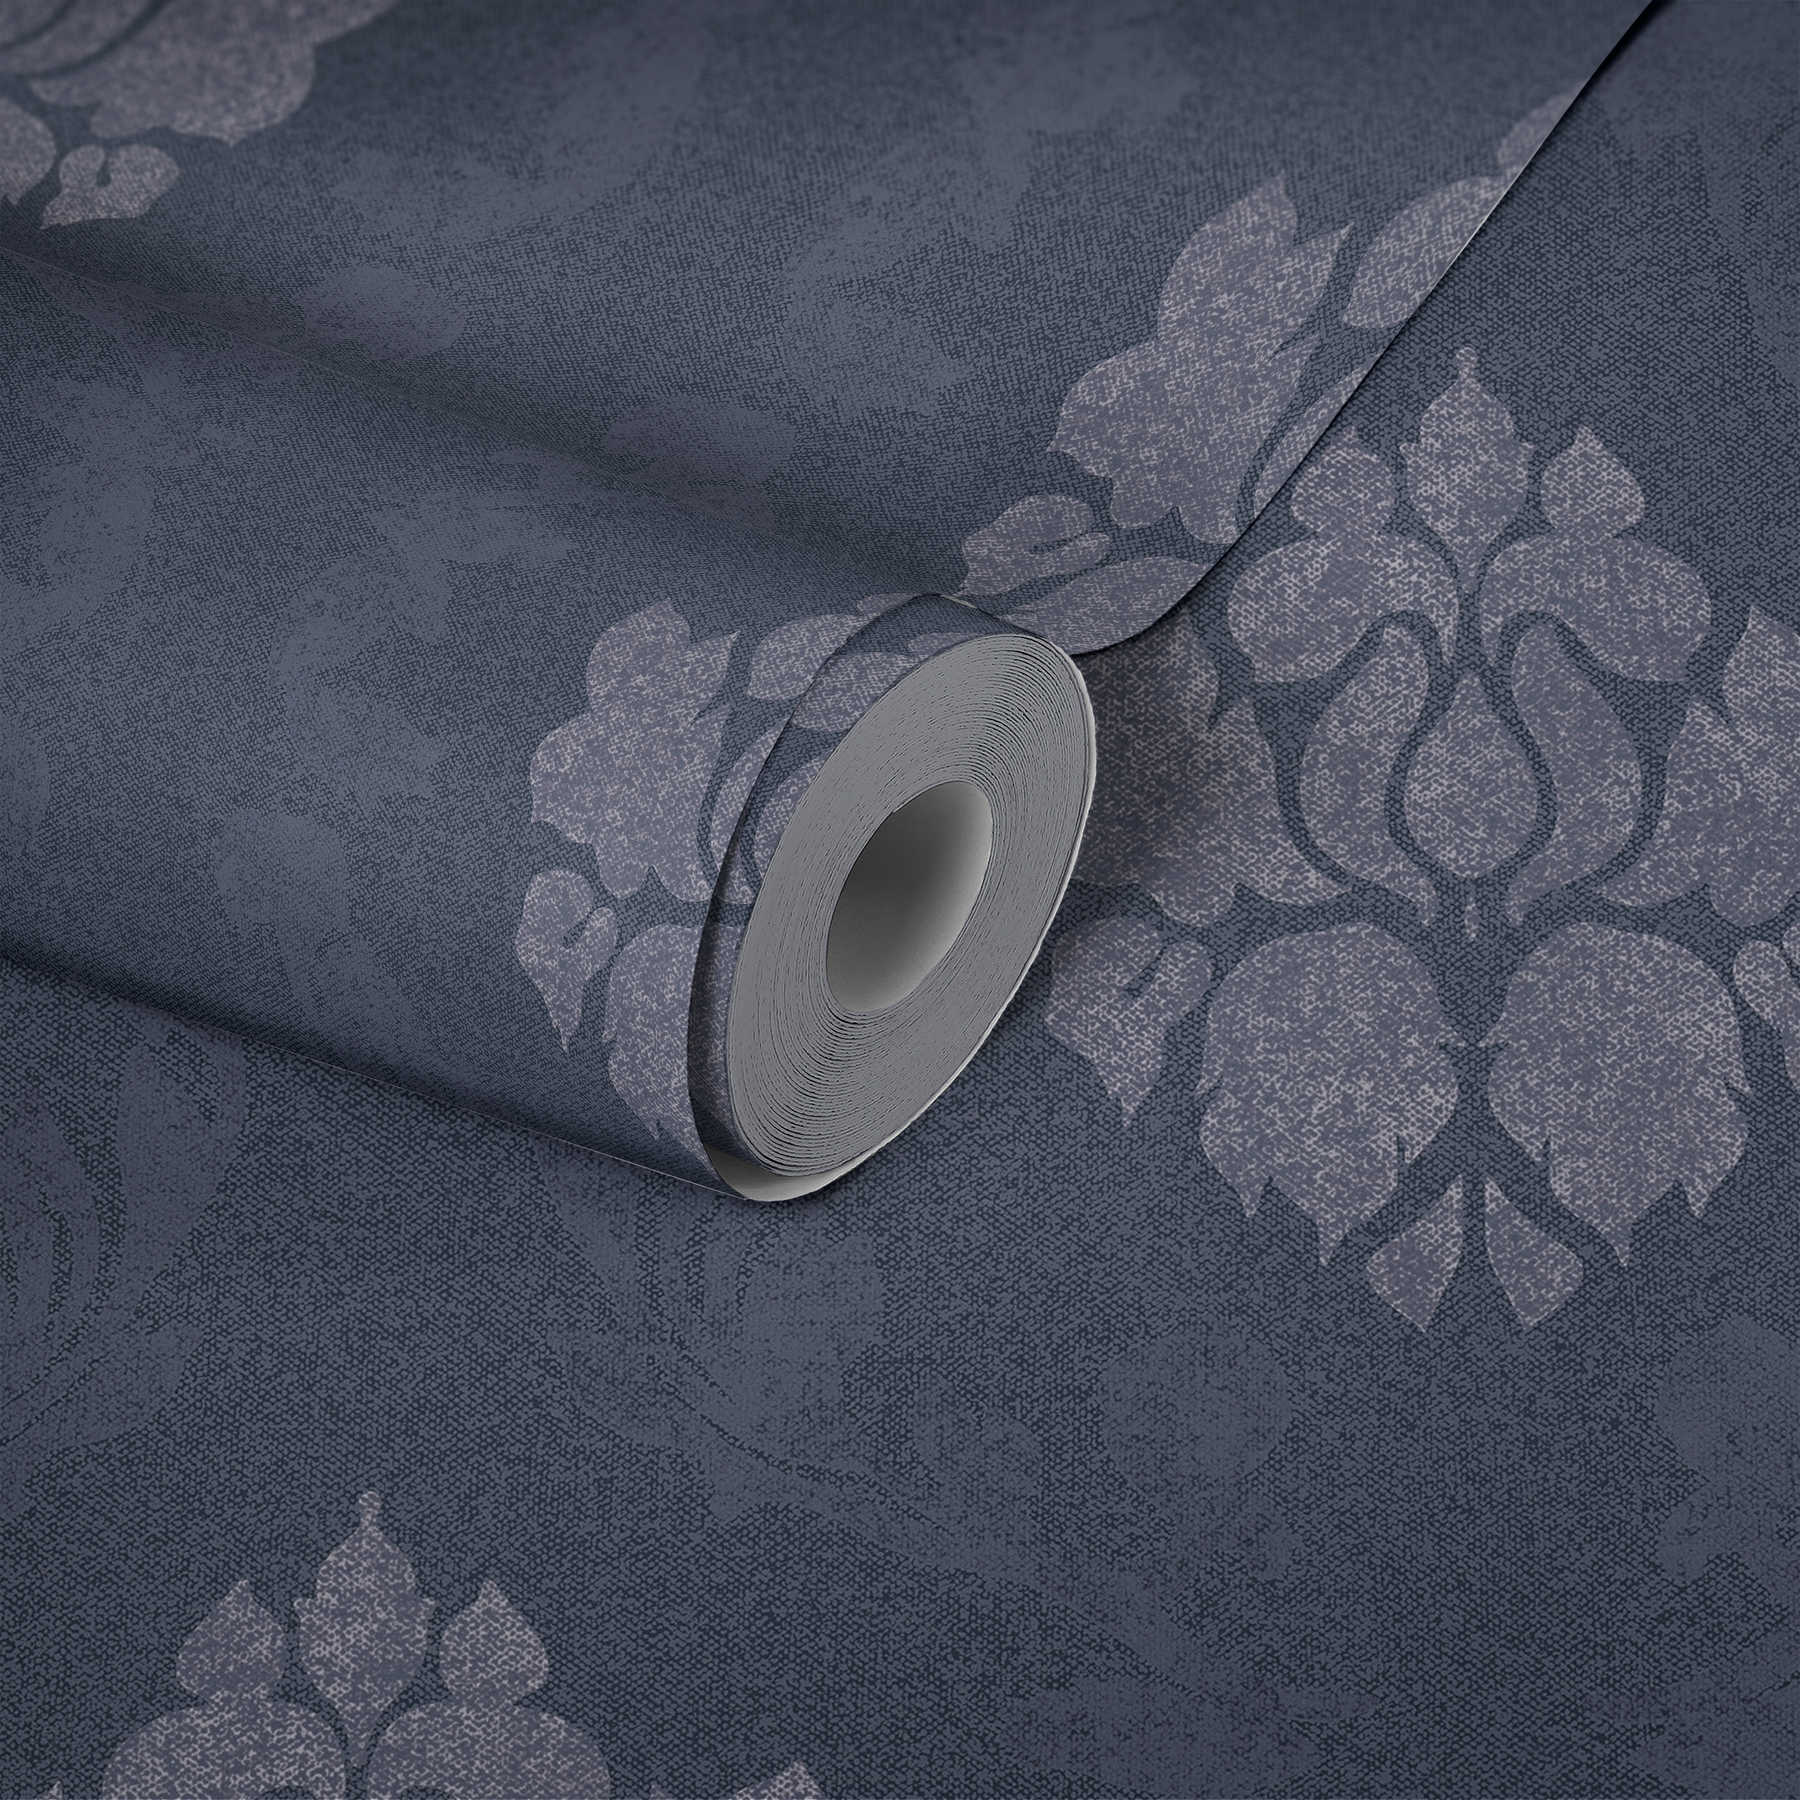             wallpaper ornament pattern in linen look - blue
        